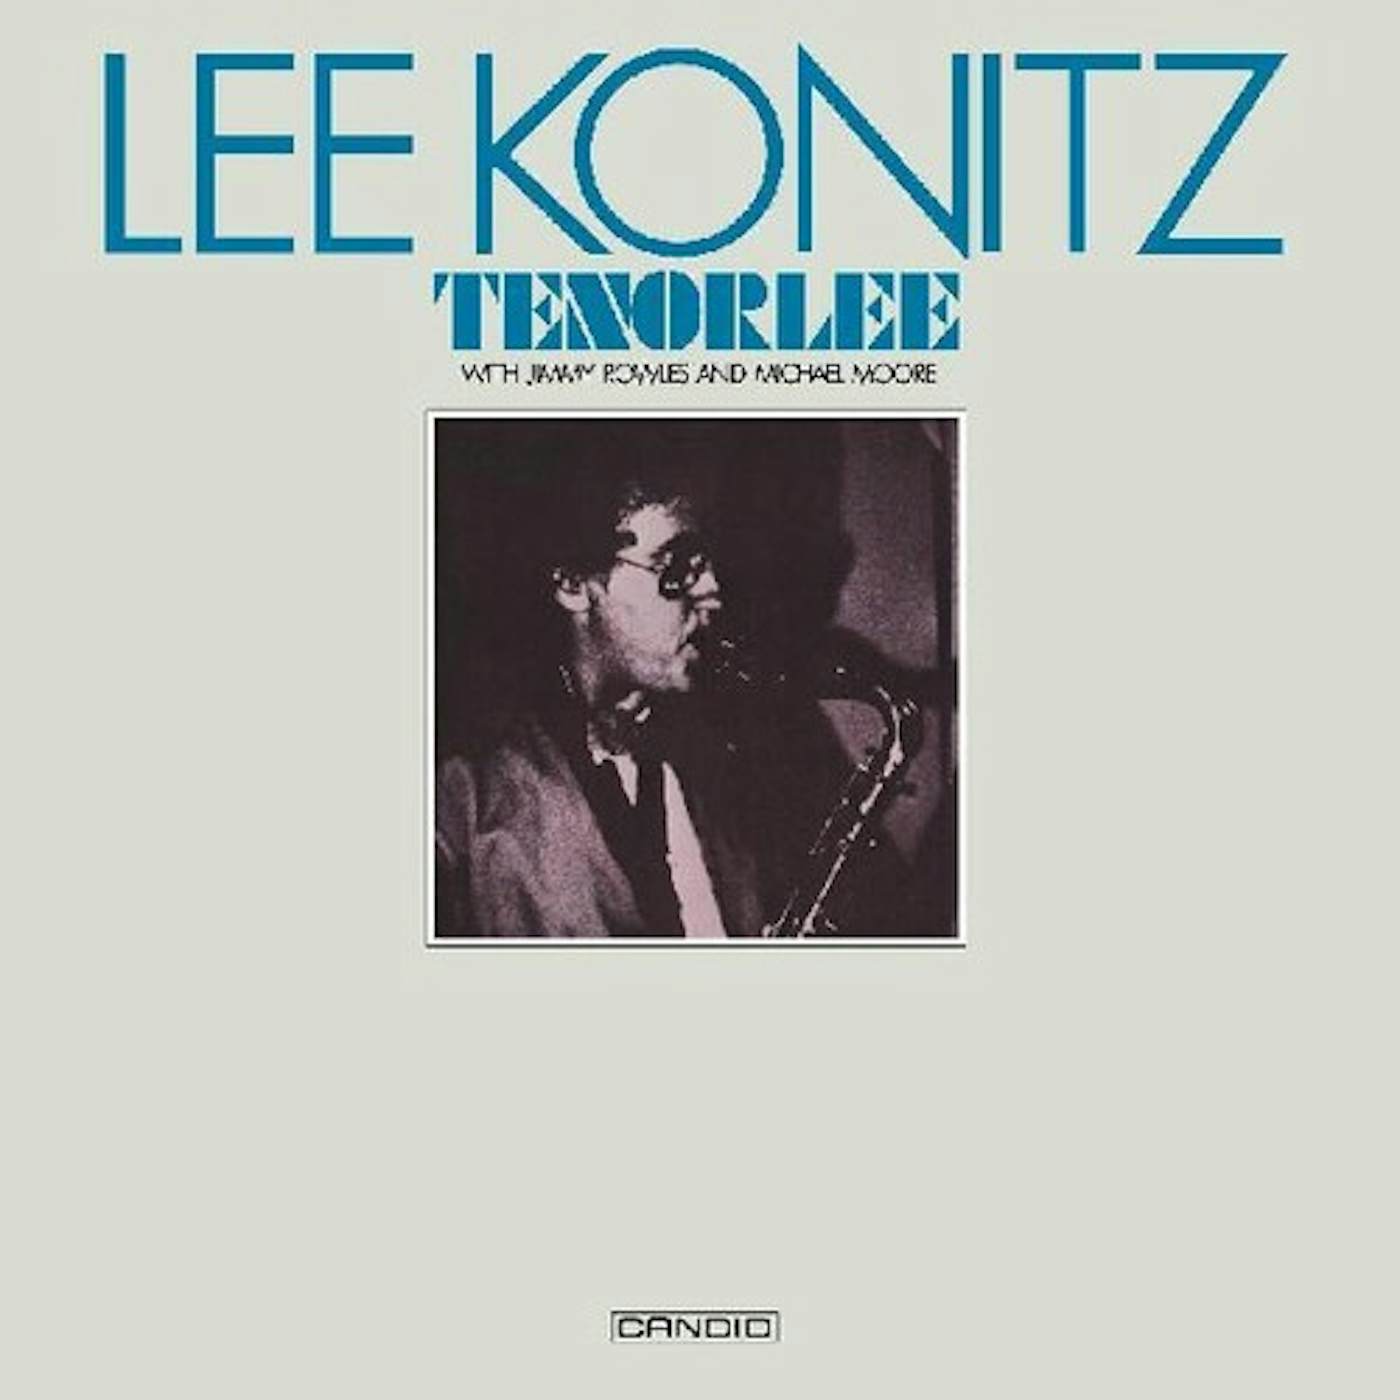 Lee Konitz TENORLEE CD